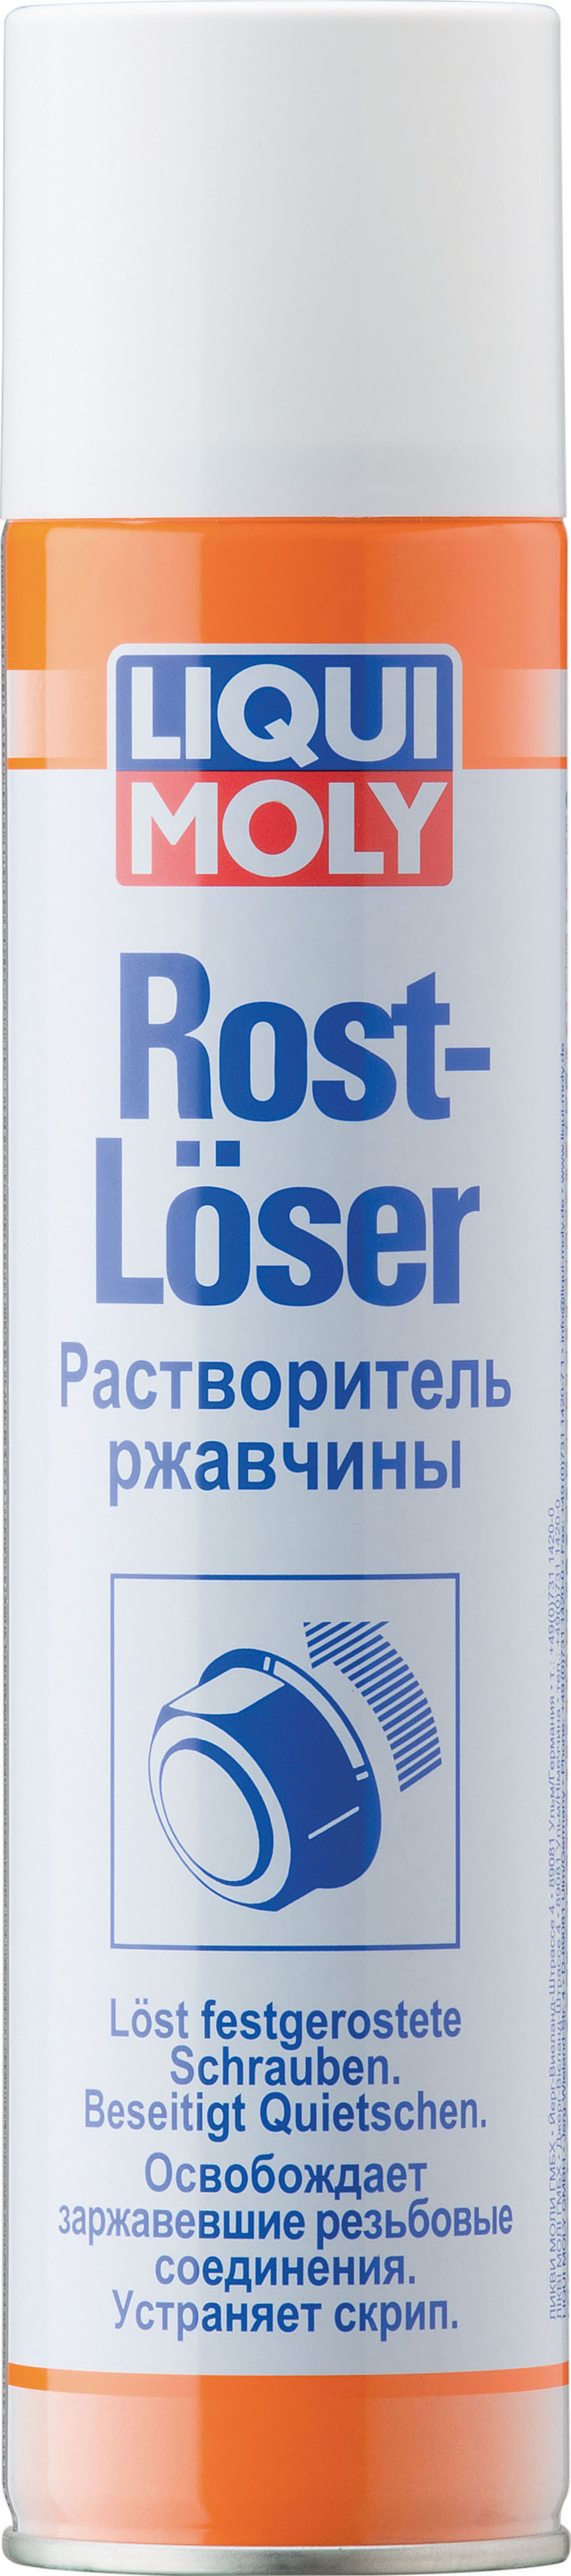 Растворитель ржавчины LIQUI MOLY Rostloser (0,3 литра)